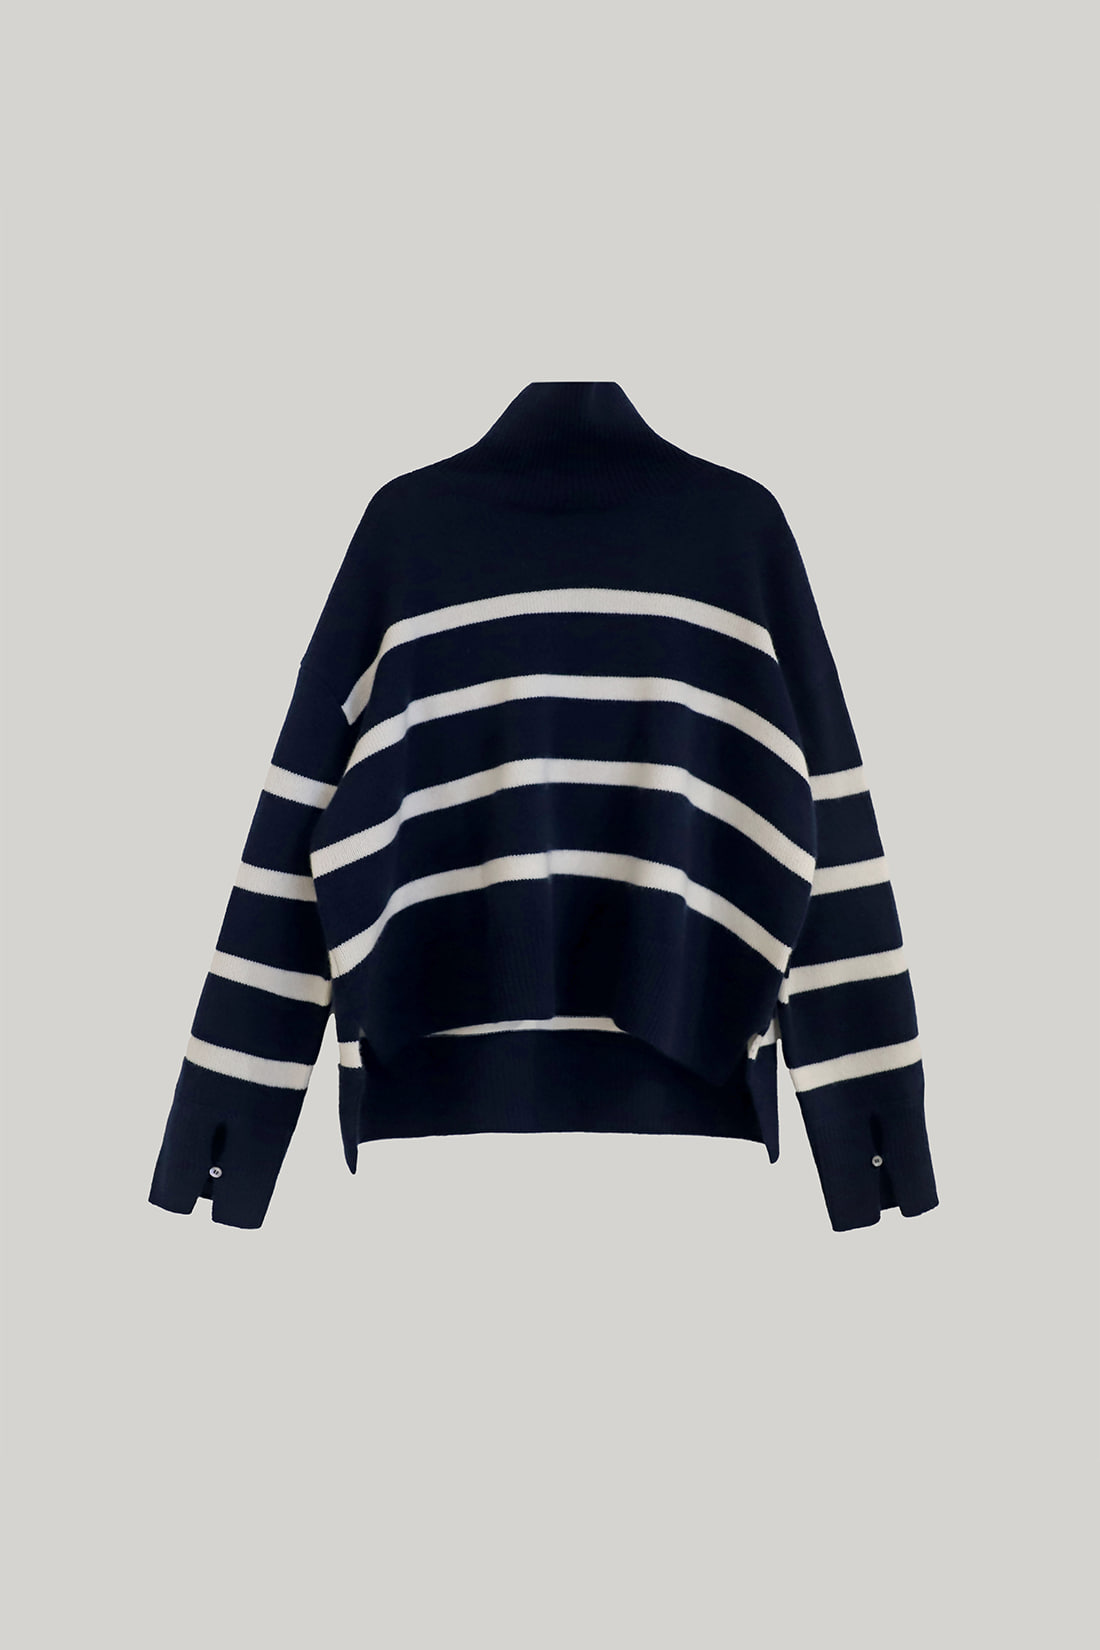 Becky Cashmere 100% High-neck Sweater (Deep Navy Stripe)